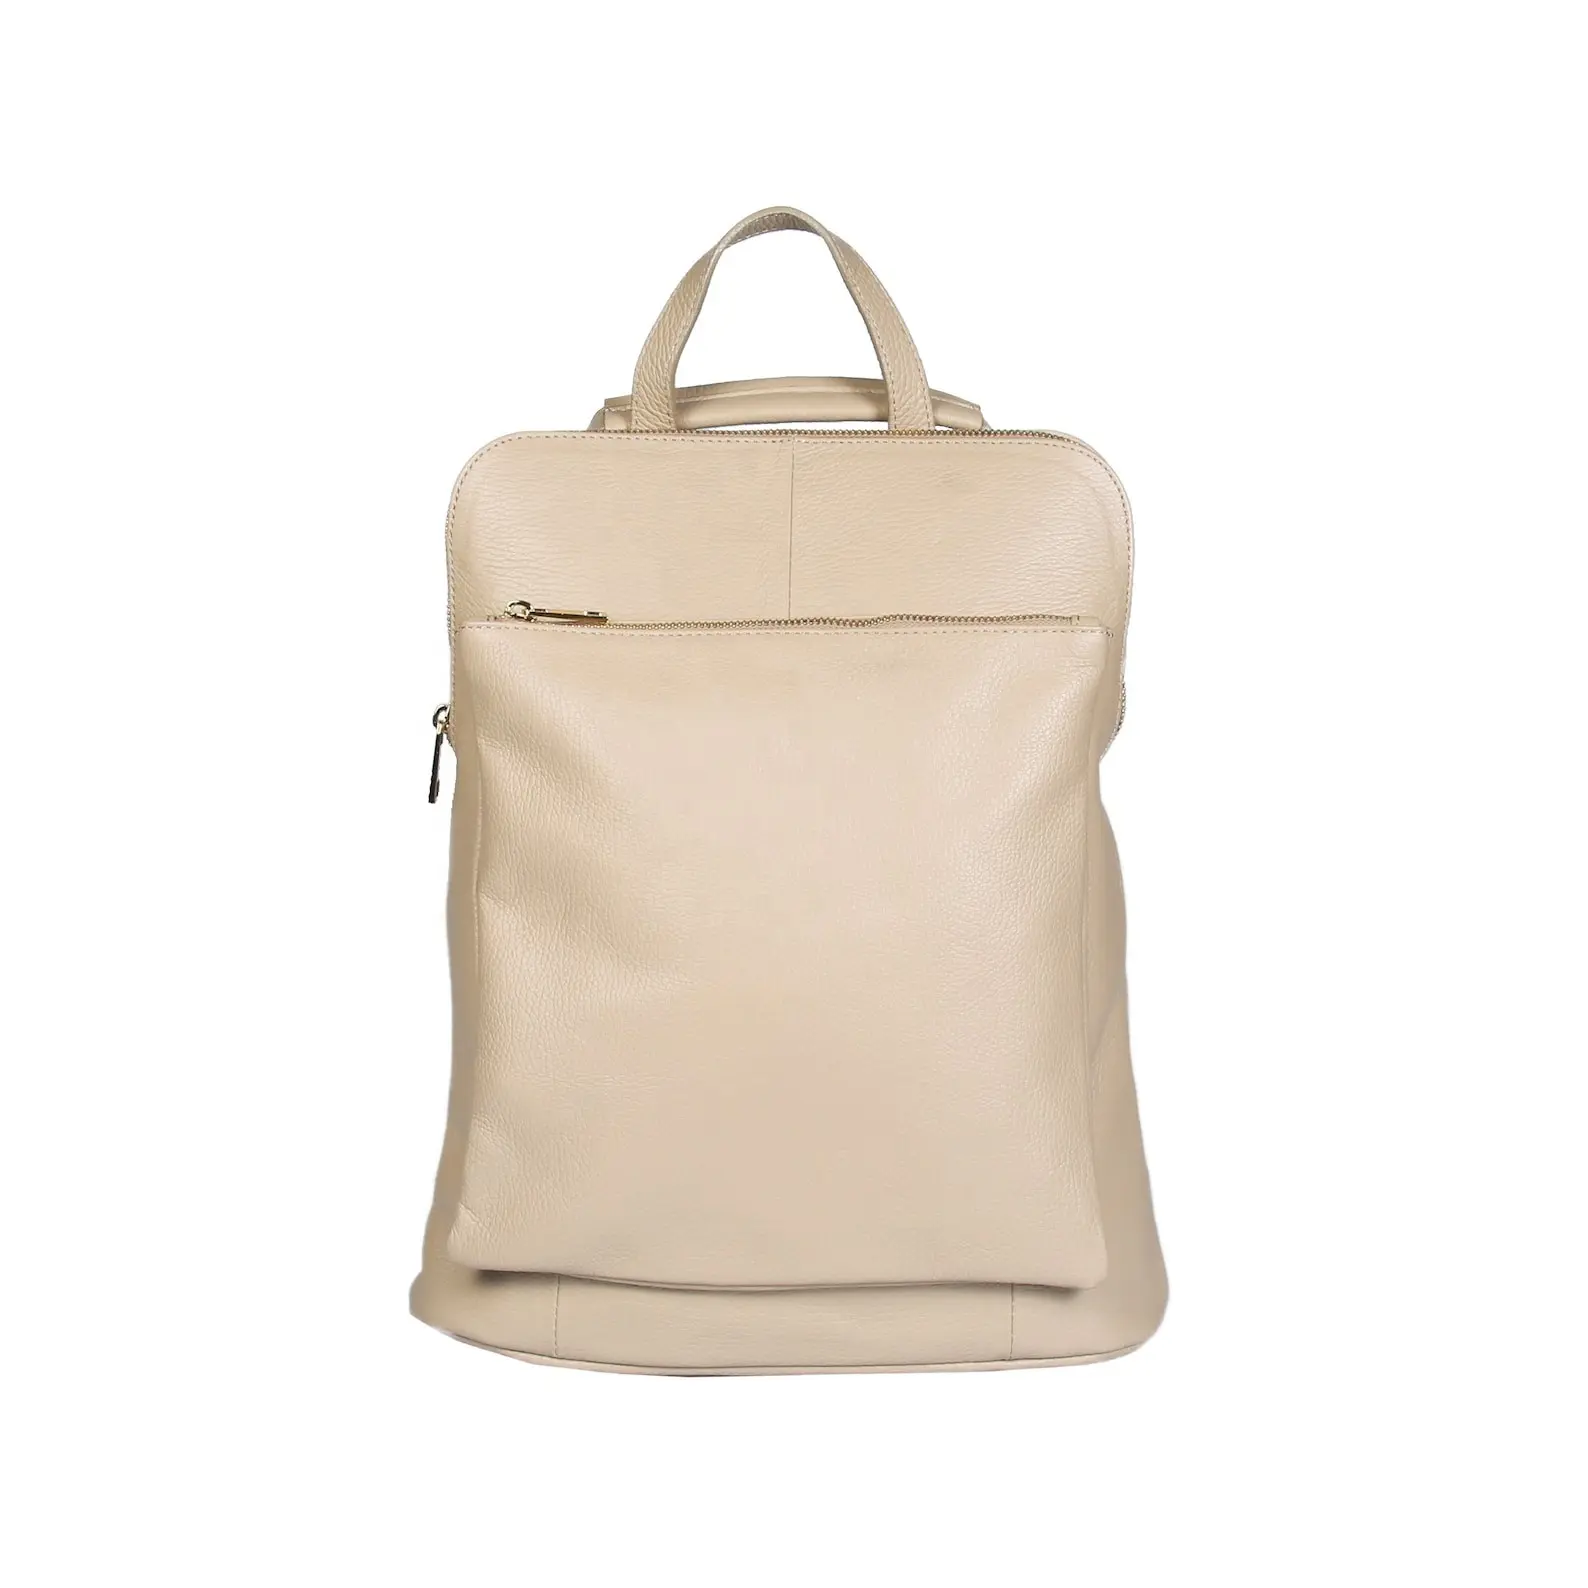 Кожаный рюкзак старый стиль высокого качества натуральная мотоциклетная сумка ноутбук школьный дорожный рюкзак подарок идея LBK-0079B